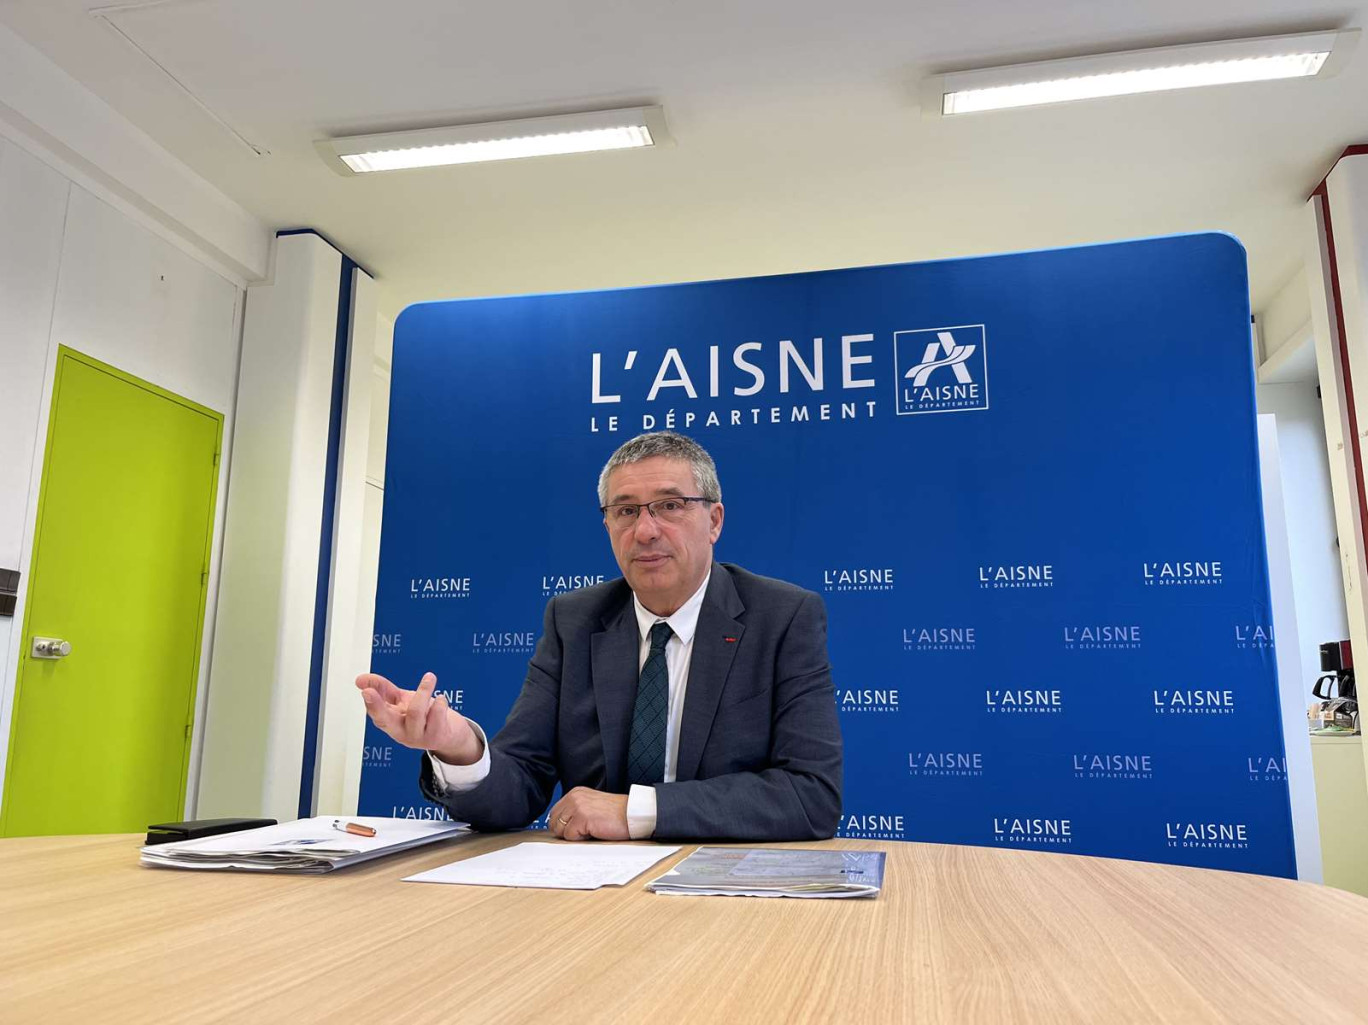 Nicolas Fricoteaux, président de l'Aisne, souhaite une réforme pour clarifier les compétences, les ressources et les dépenses des départements, qui corrige les déséquilibres.